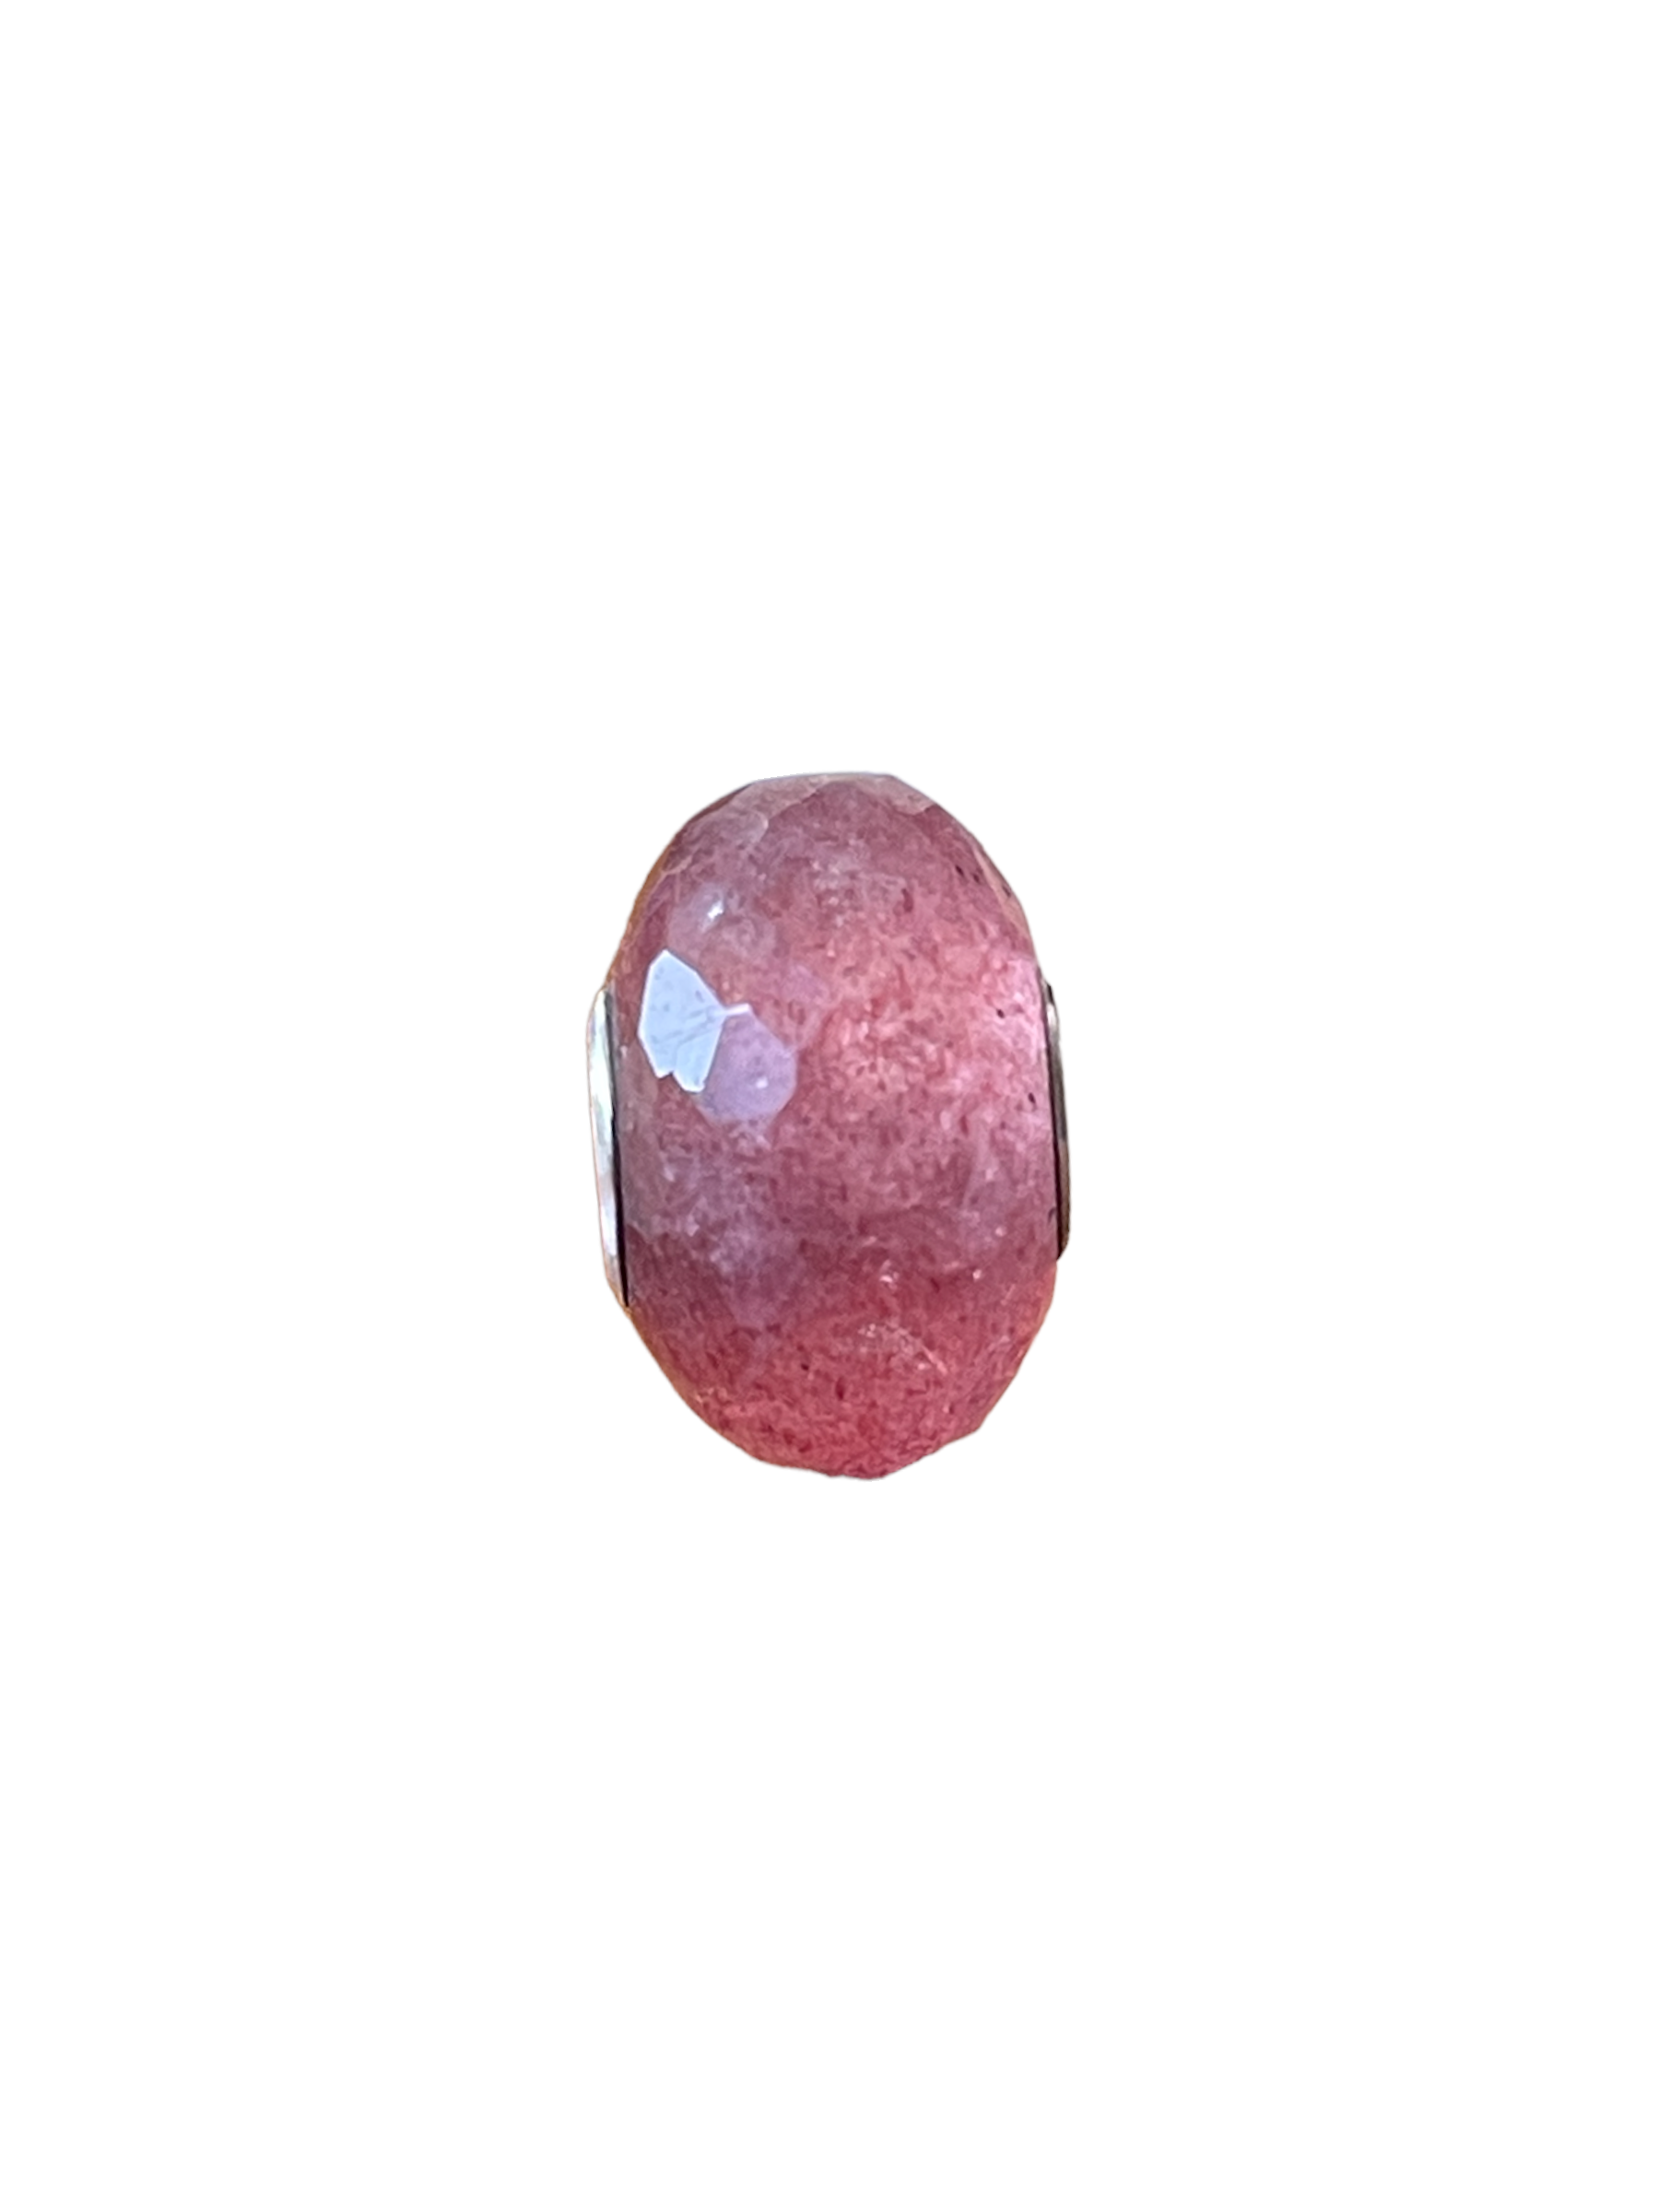 Strawberry quartz valkyriegemsbeads